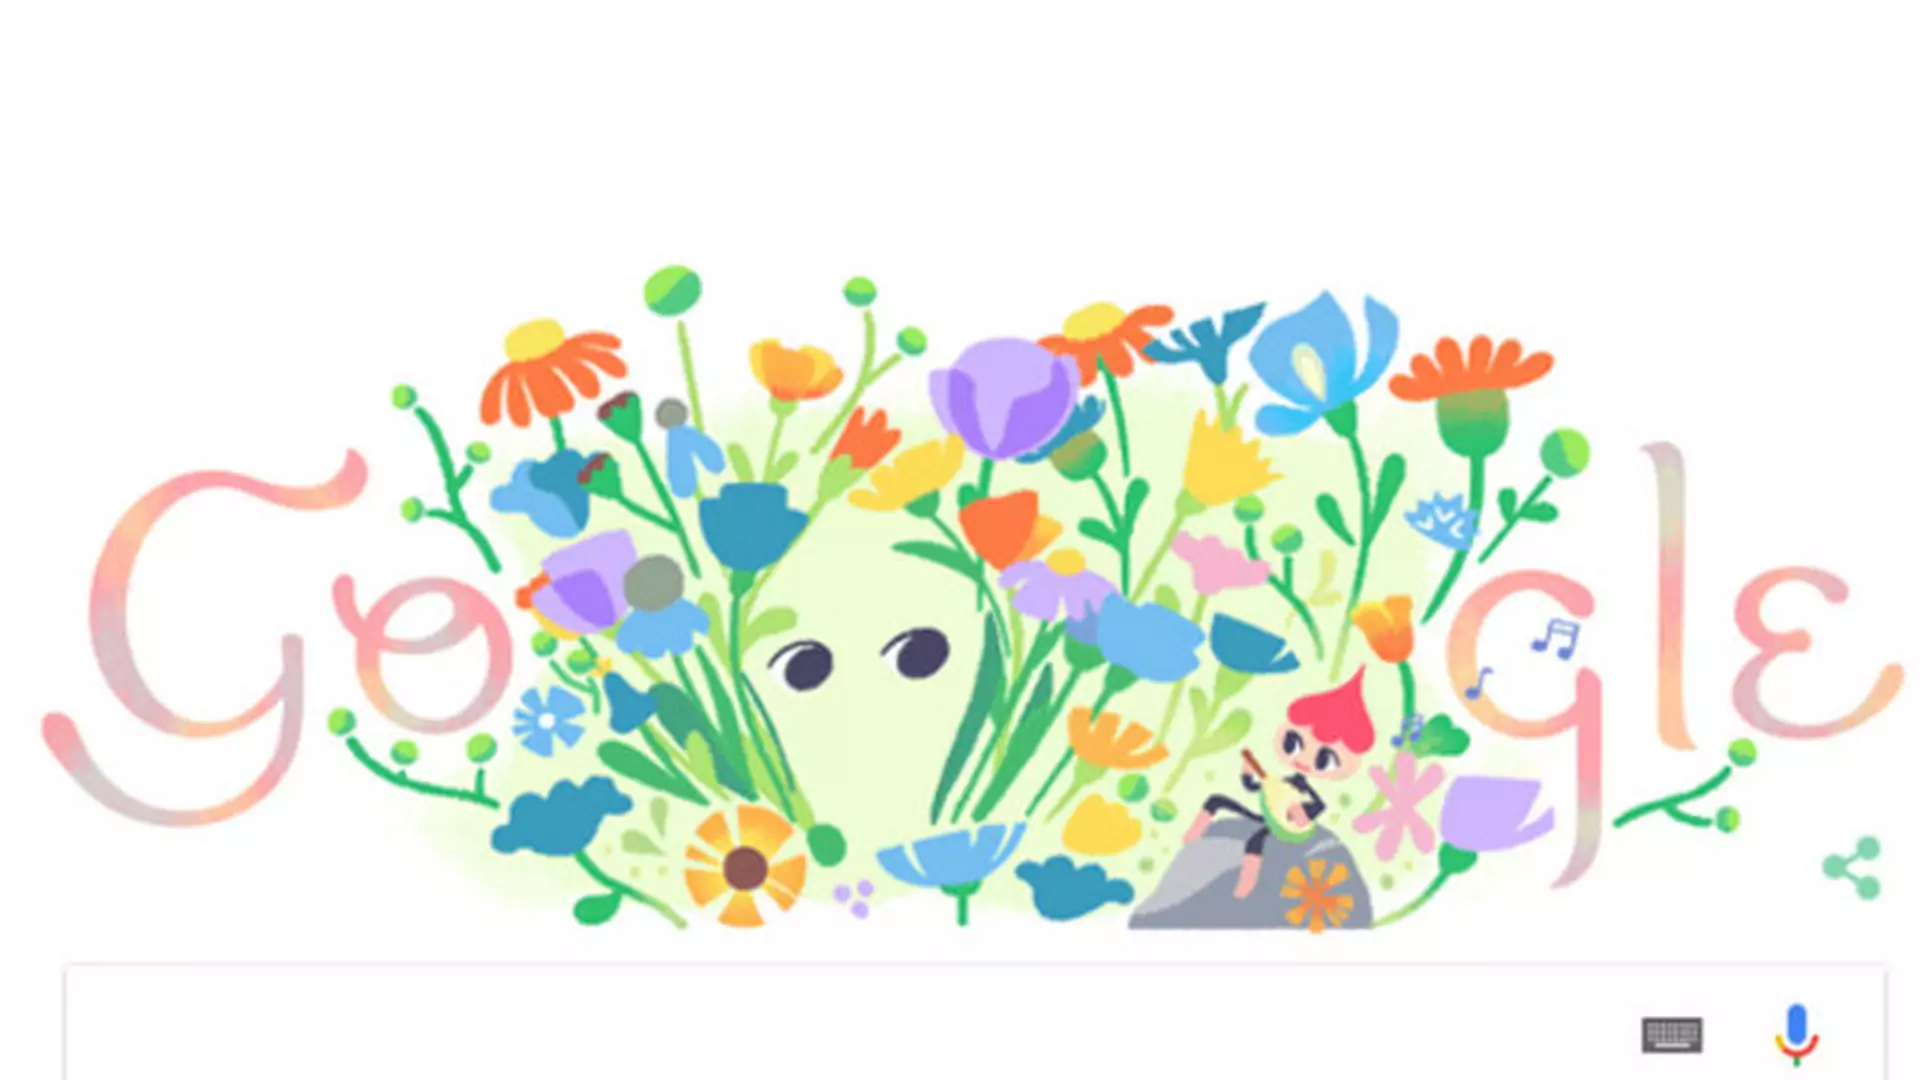 Równonoc wiosenna w Google Doodle. Mamy astronomiczną wiosnę!